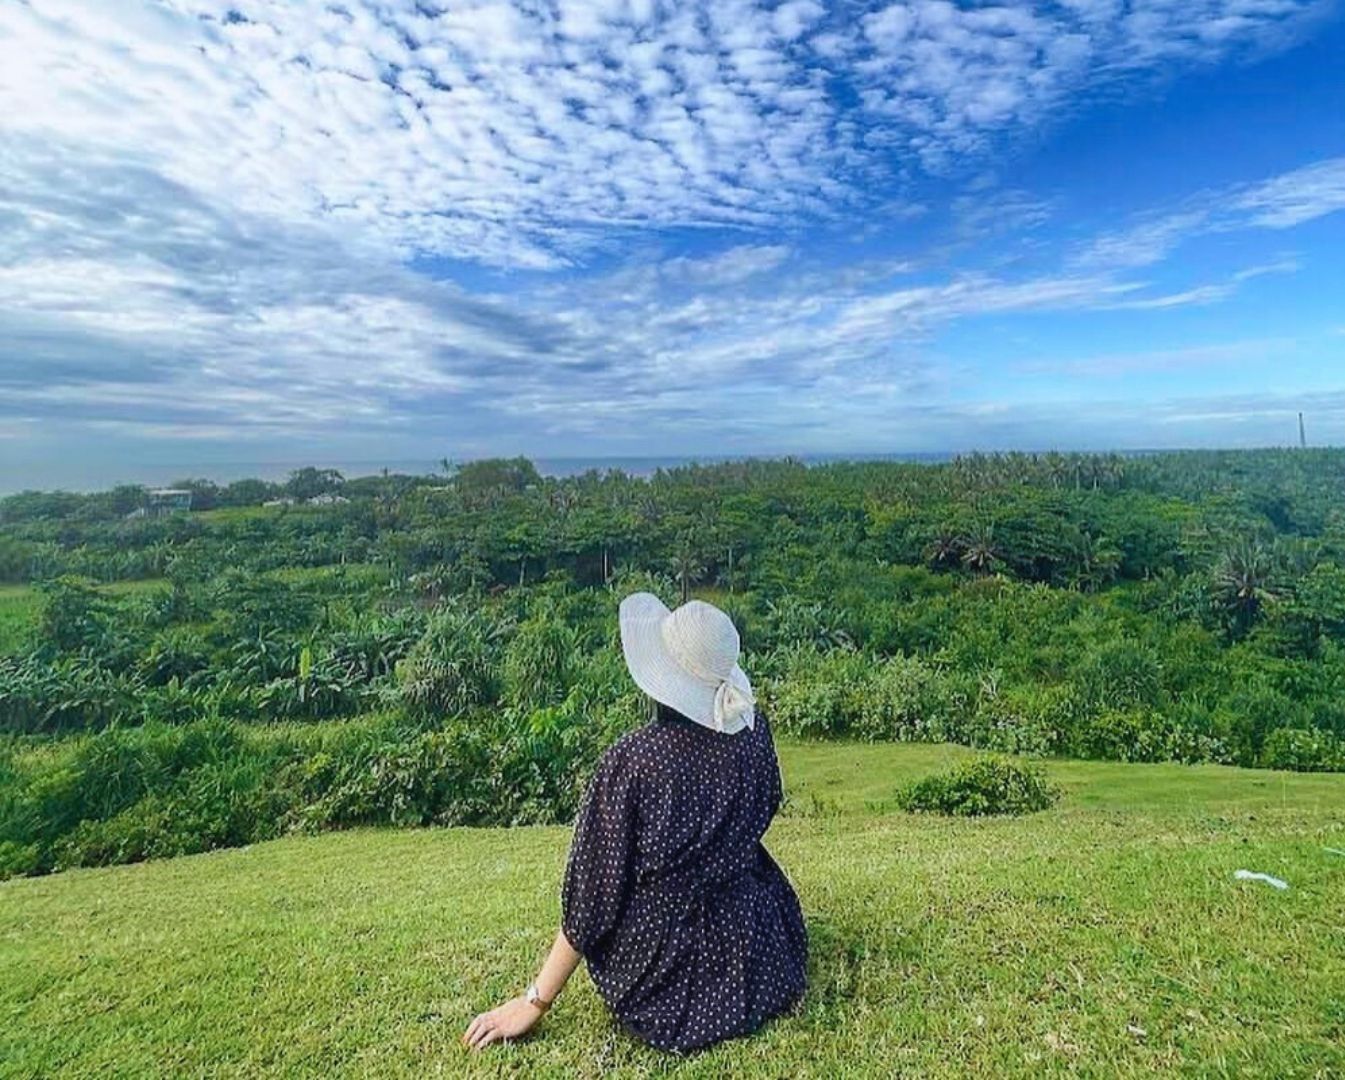 Panorama alam yang indah dapat dinikmati dari kawasan Bukit Teletubbies yang hijau ini. /Instagram/@nisaaasin_